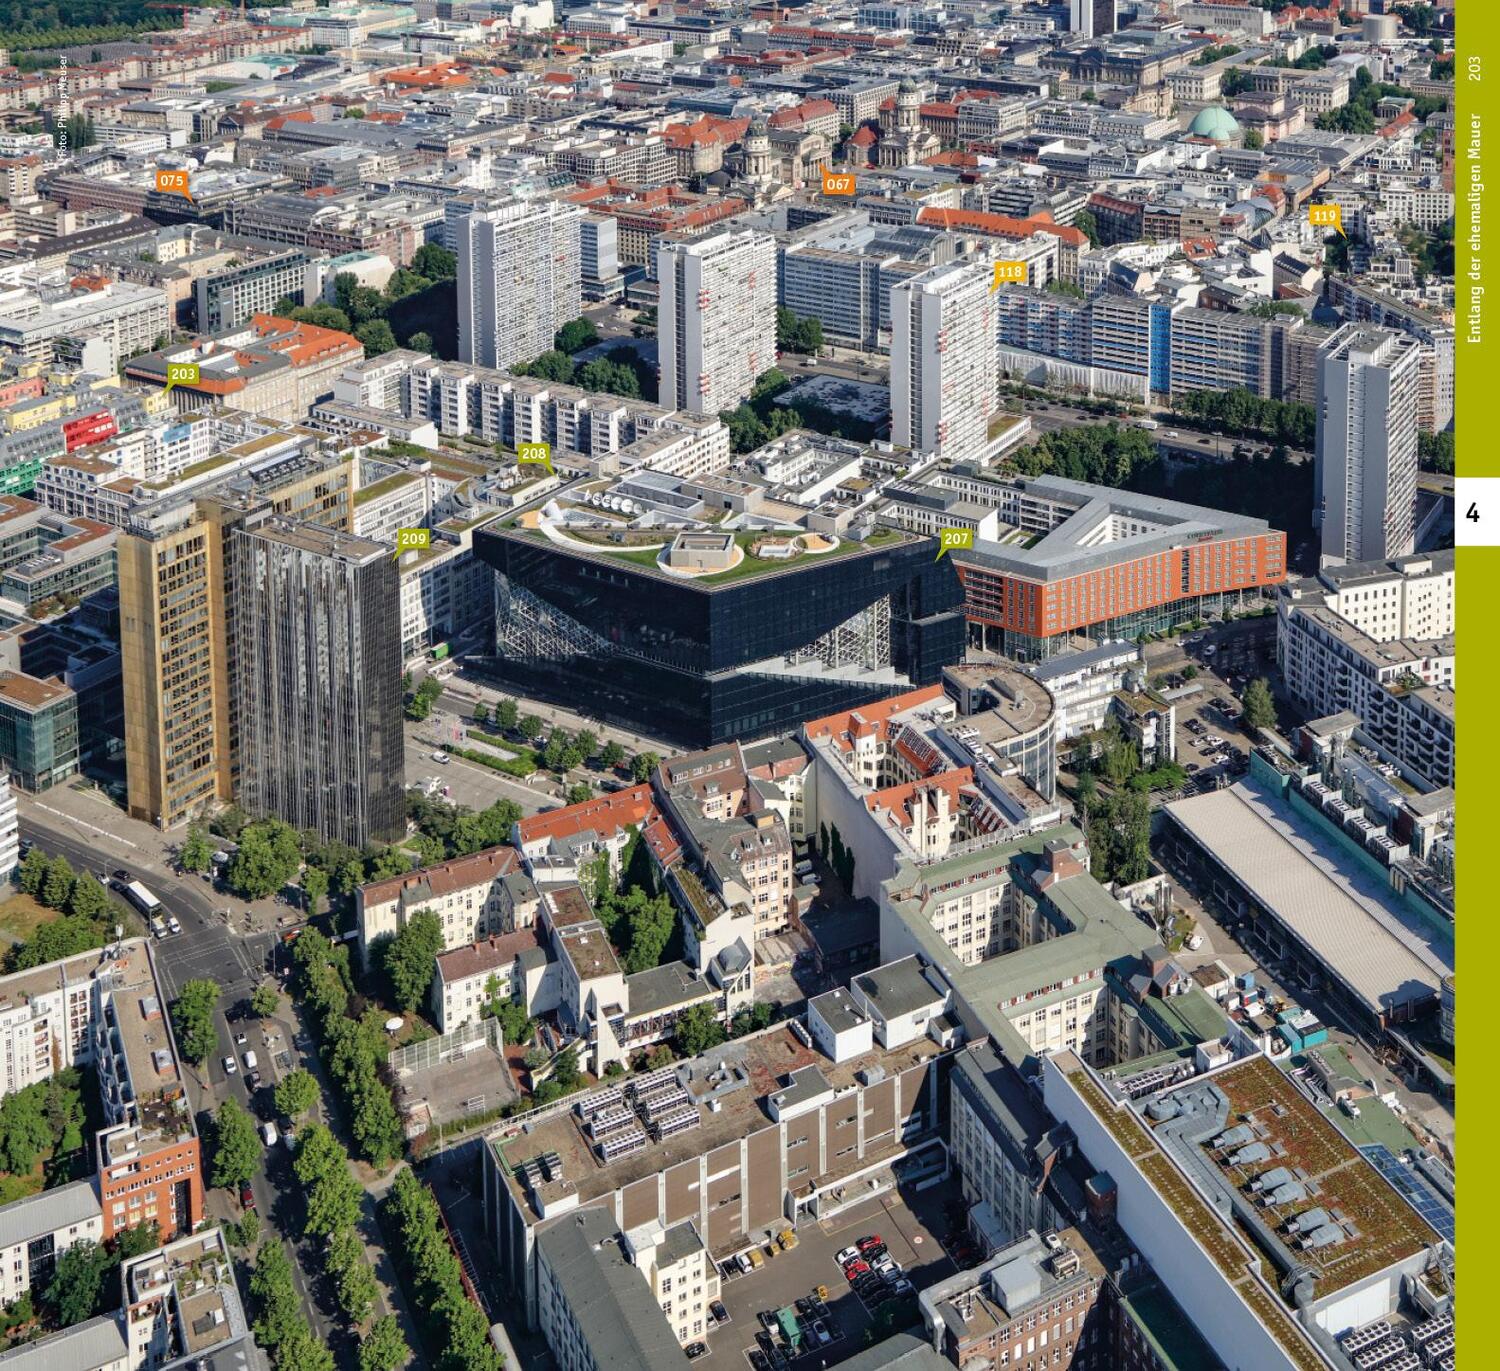 Bild: 9783869228242 | Berlin. Architekturführer | Neun Touren durch die deutsche Hauptstadt